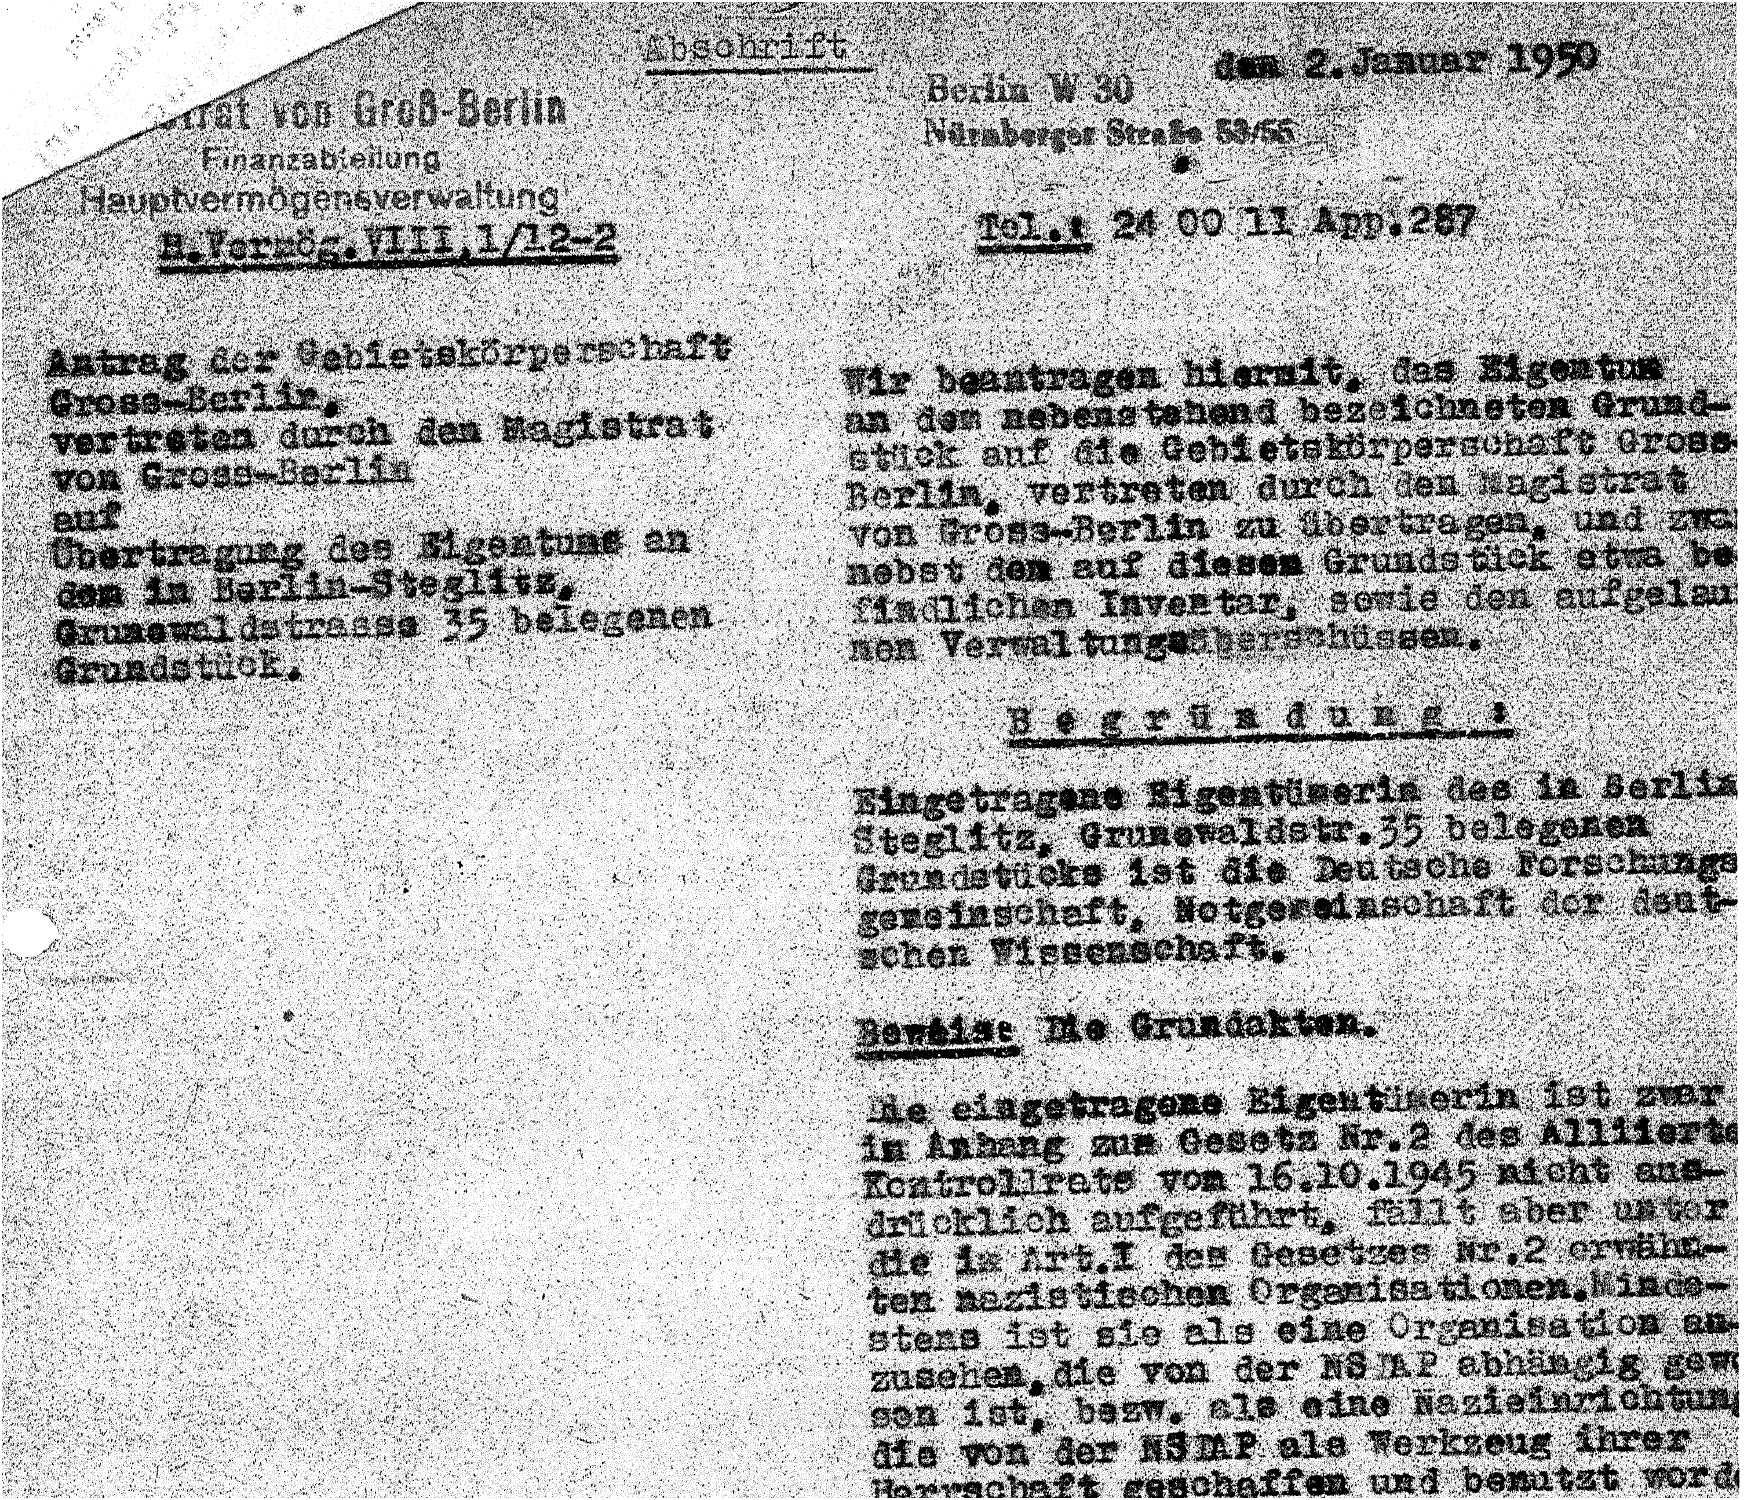 Ausschnitt aus dem Antrag des Magistrats Berlin zur Vermögensübertragung Grunewaldstraße 35 an die Berliner Kommission für Ansprüche auf Vermögenswerte vom 2.1.1950